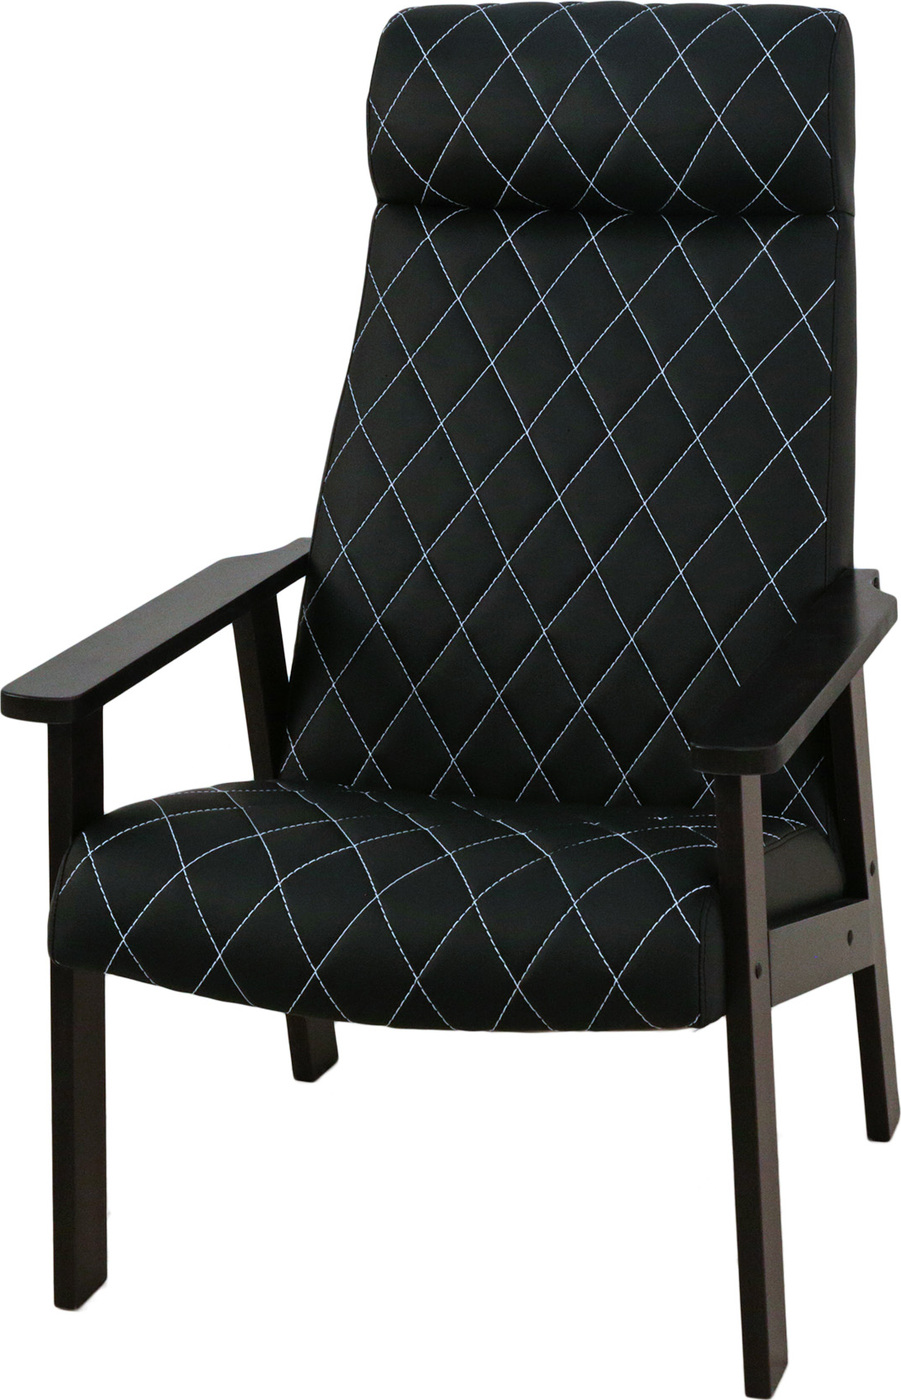 Кресло для отдыха Вилора с прострочкой, венге, Luxa Black (черный)